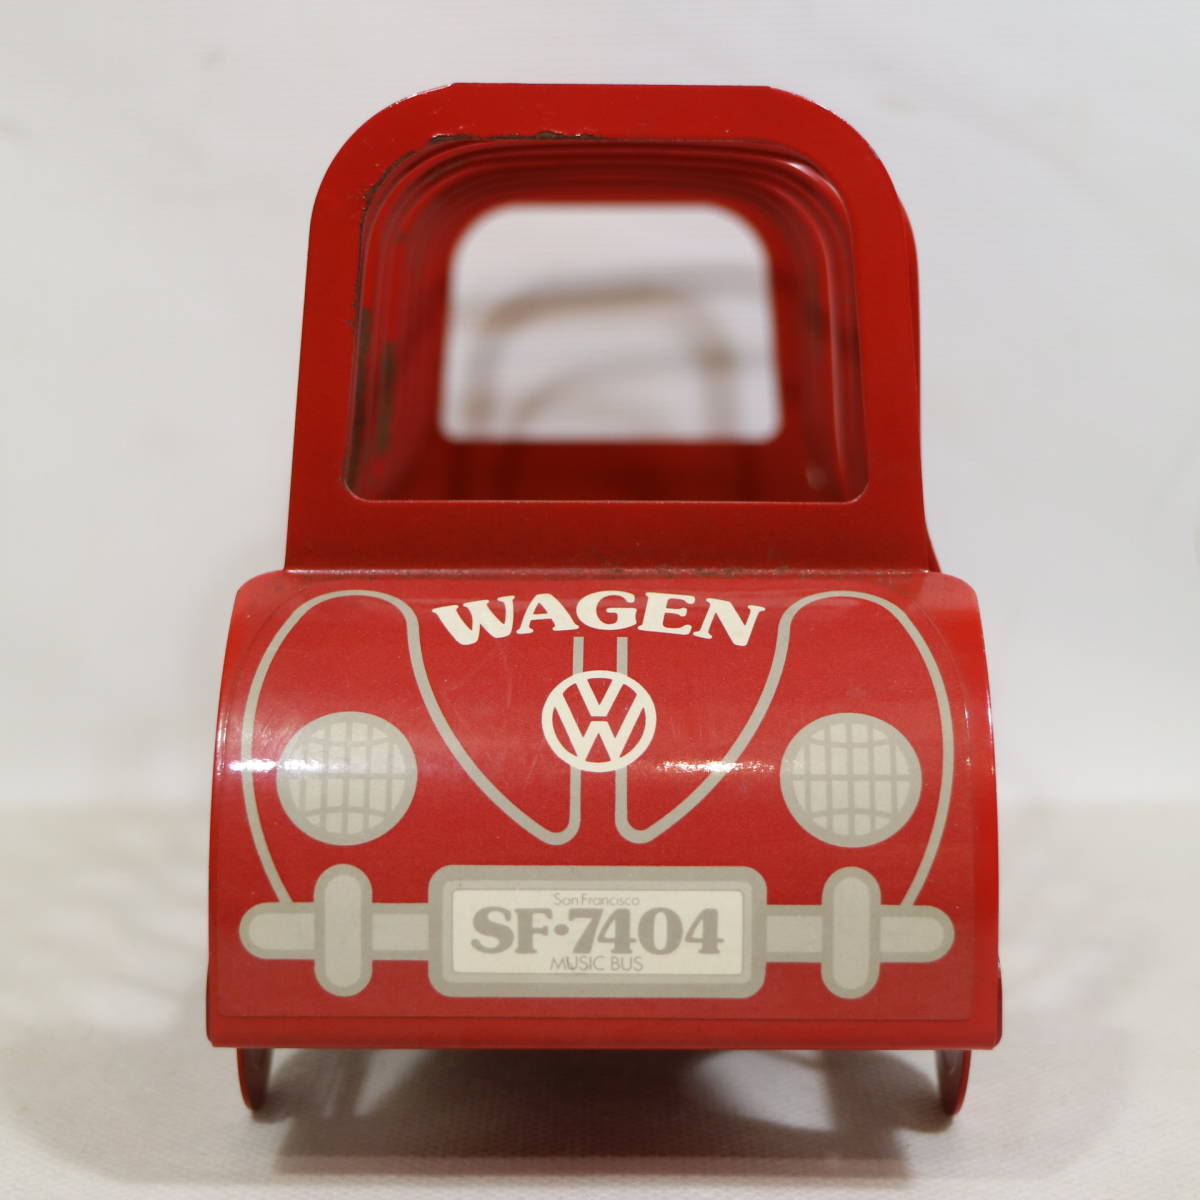 WAGEN ワーゲン ビンテージ ブックスタンド レッド 赤 San Francisco MUSIC BUS ミュージックバス SF-7404 インテリア雑貨 本立て 小物 車_画像2